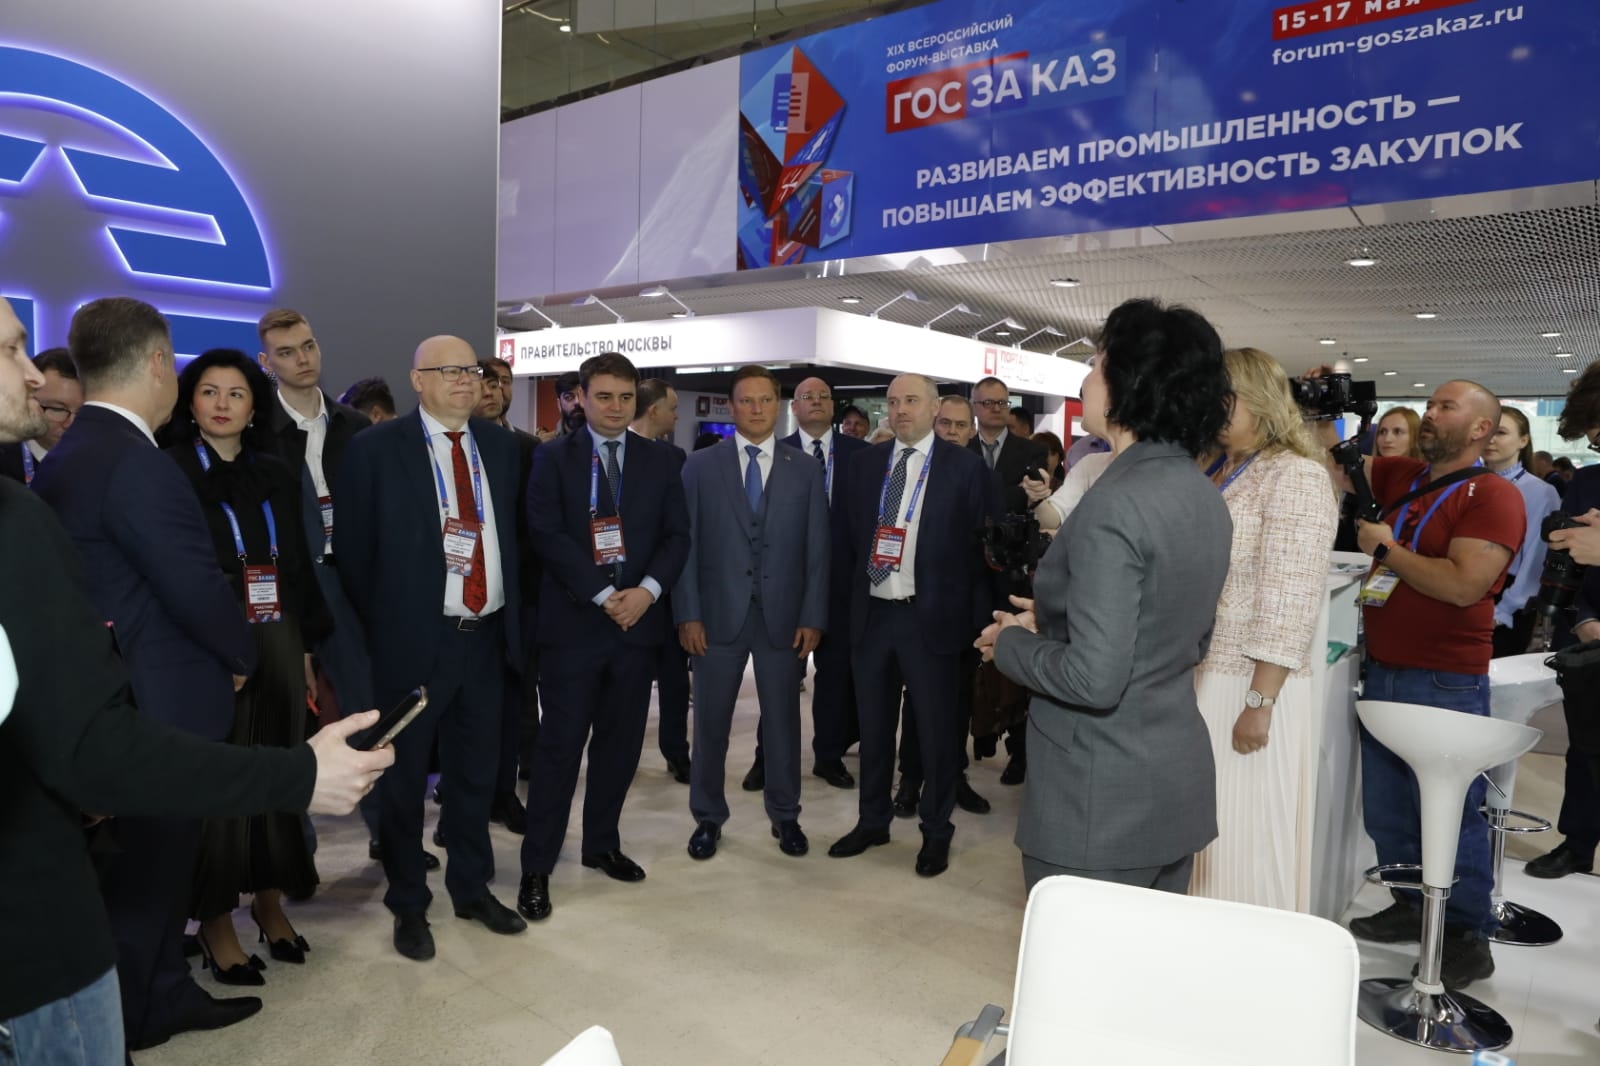 XIX Всероссийский Форум-выставка «ГОСЗАКАЗ» начался с обхода экспозиции